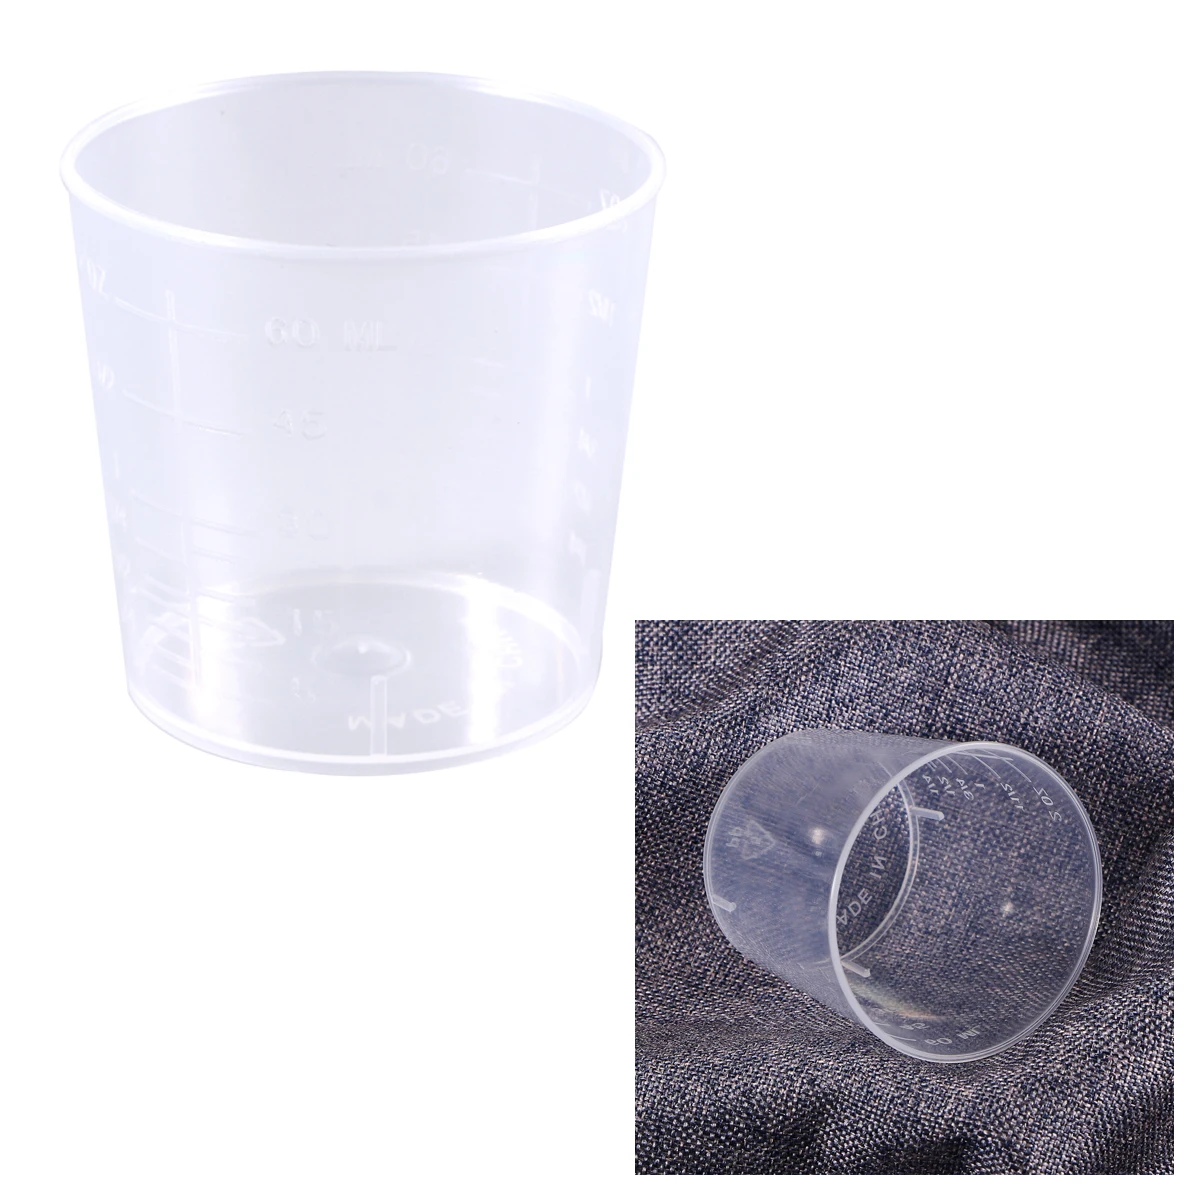 2 шт 60 мл Пластиковые Градуированные стаканы для измерения, измерительные стаканы, лабораторные и кулинарные жидкости, контейнер для Смешивания Краски